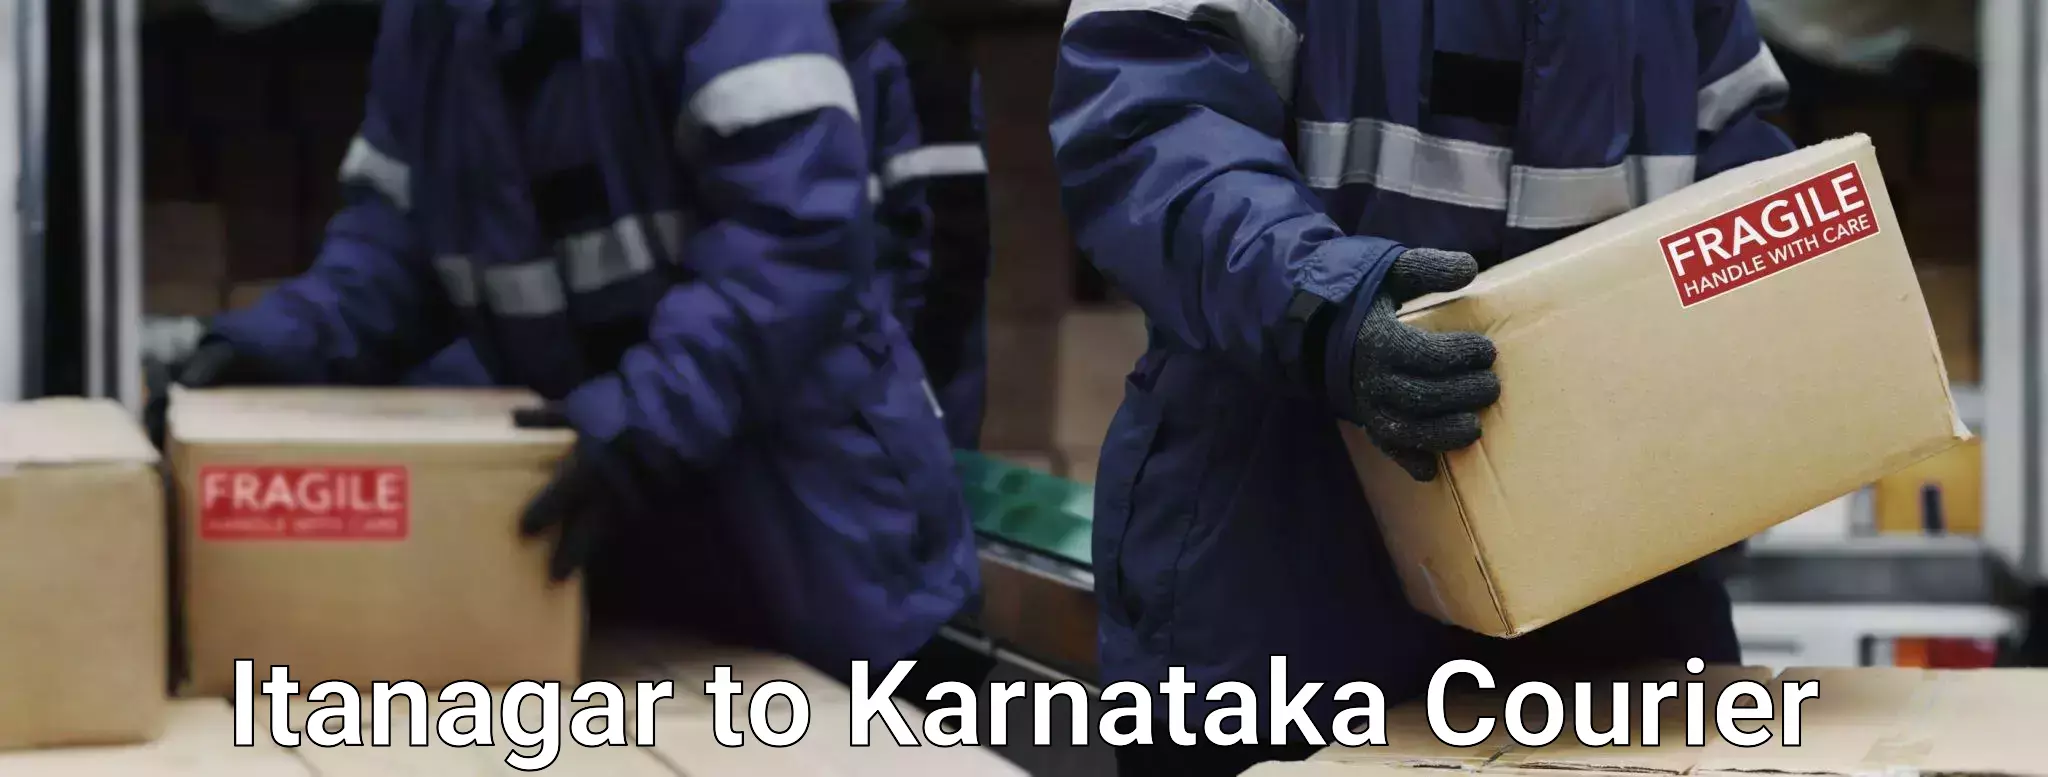 Luggage shipping planner Itanagar to Karnataka